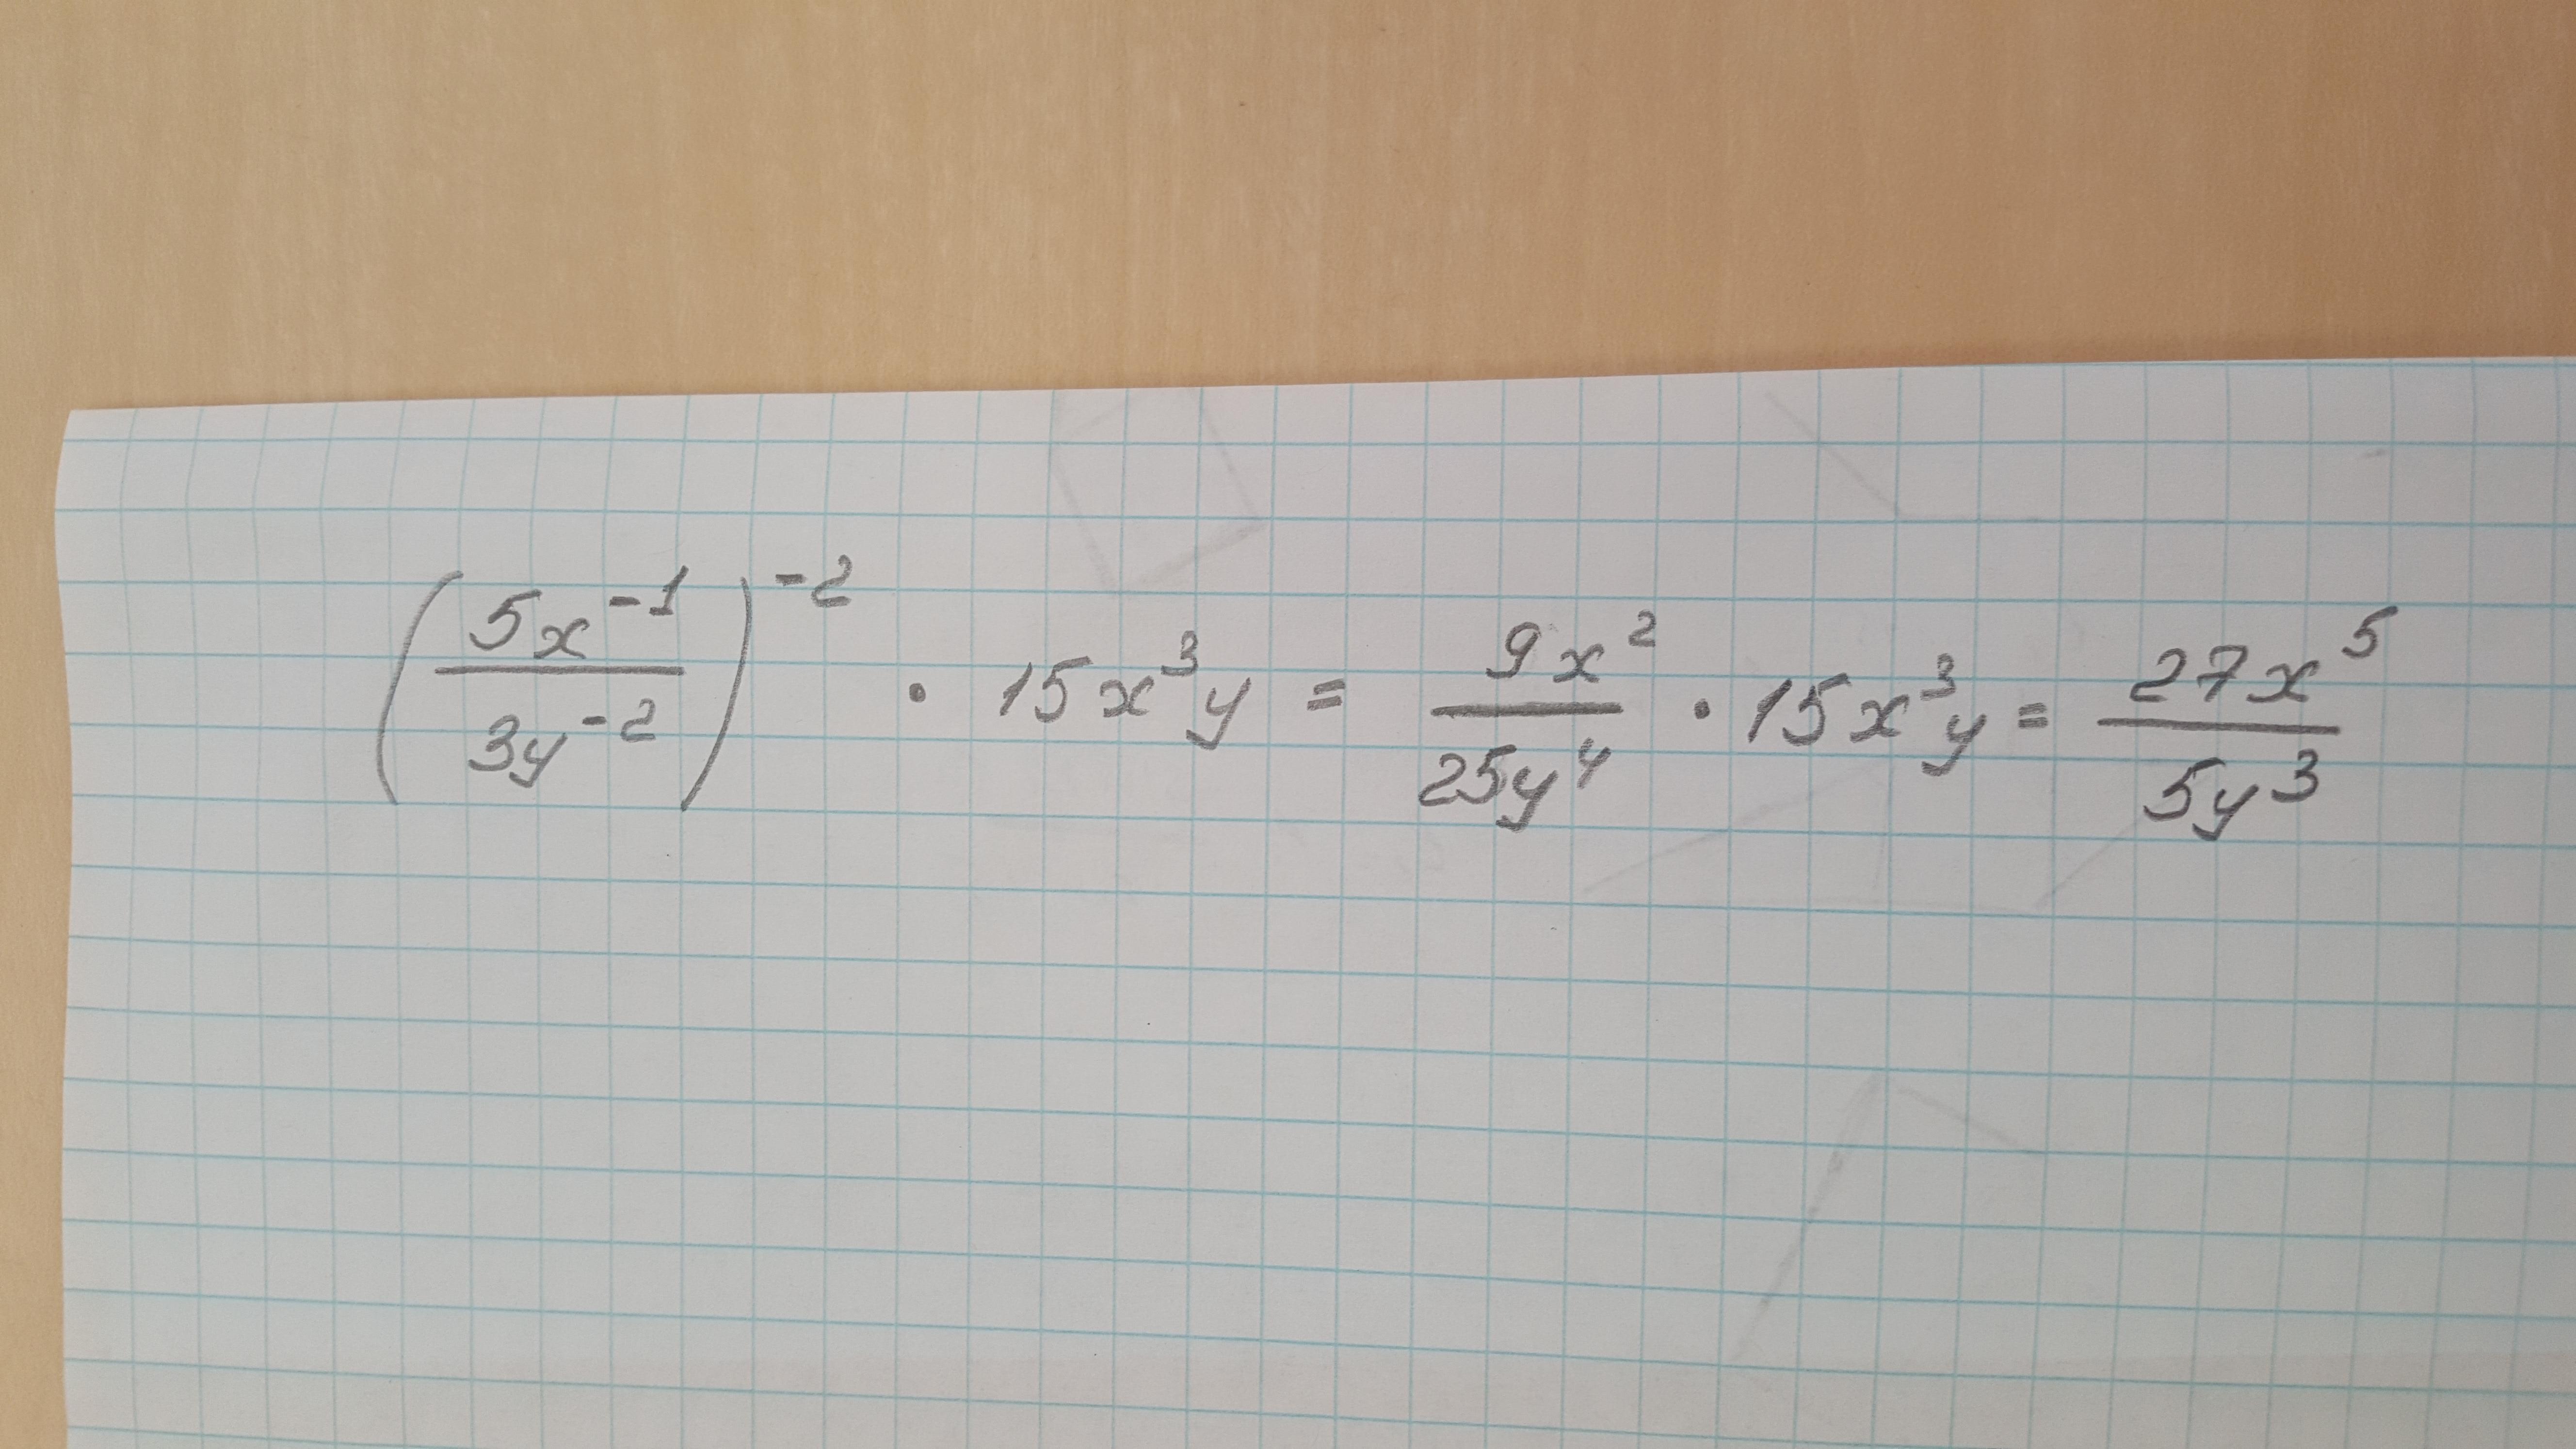 Выражение 3 x x2 25. Преобразуйте выражение 1 3x 1y 2. Преобразуйте выражение 1/3x -1y 2 -2. Преобразуйте выражение 1 4x-2y-3 -2. Преобразуйте выражение (3x-y) (3x+y) -(3x+2y) 2.